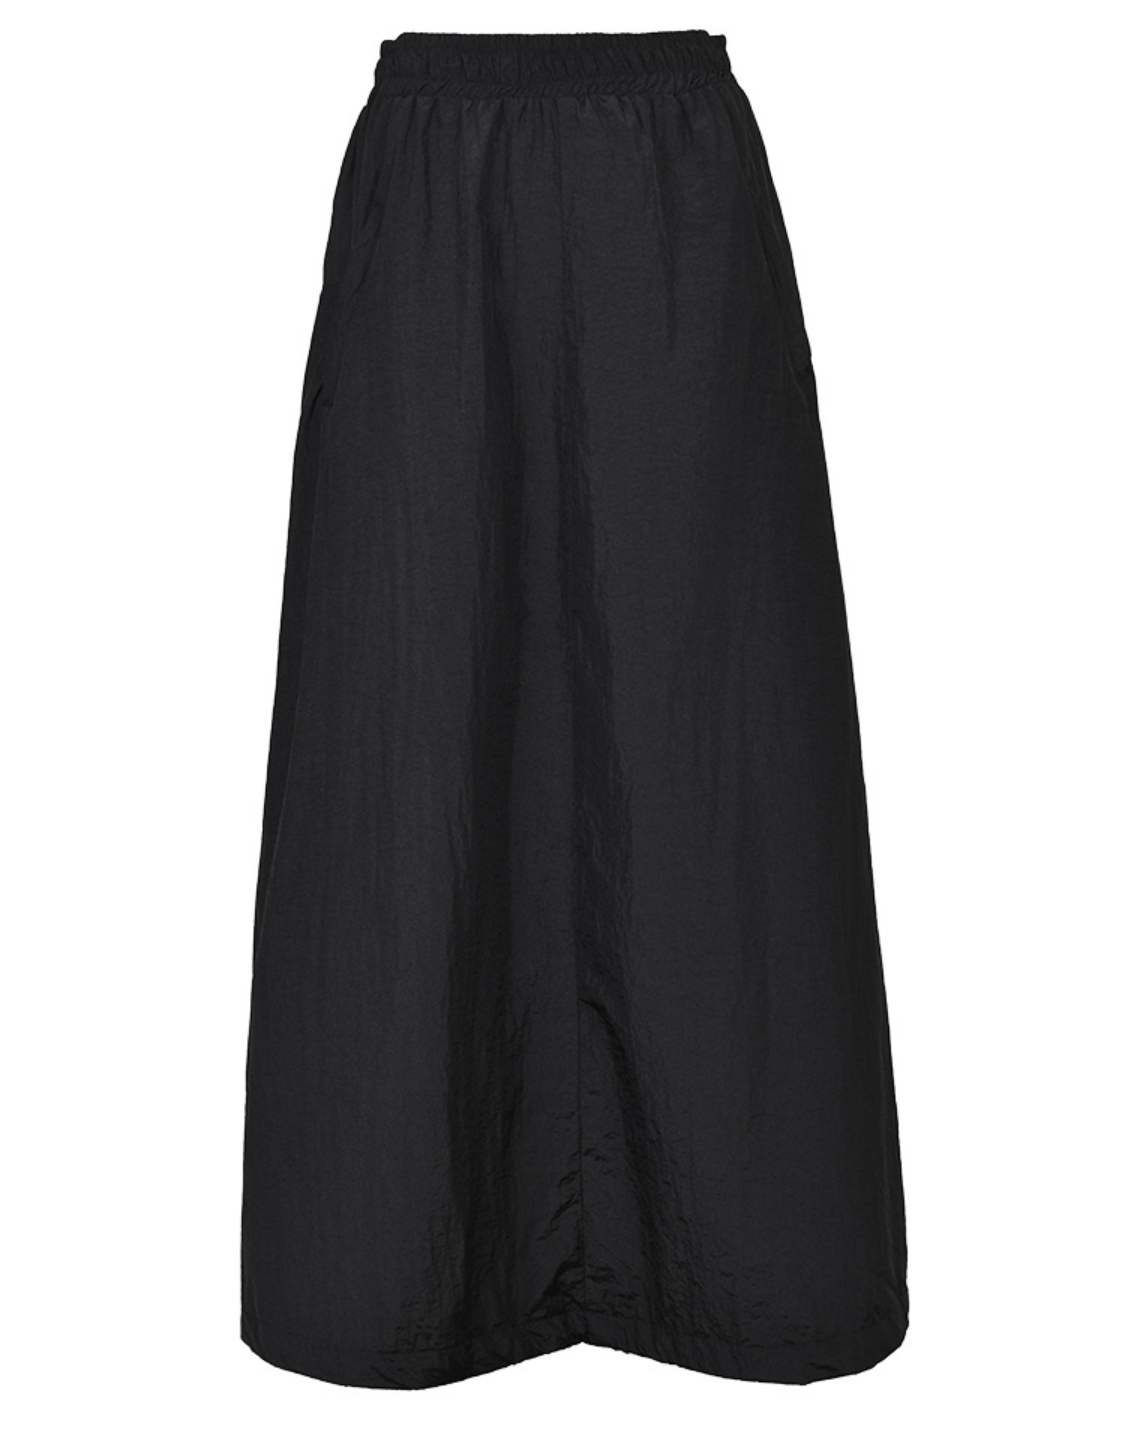 Kucho Black Chiffon Long Skirt